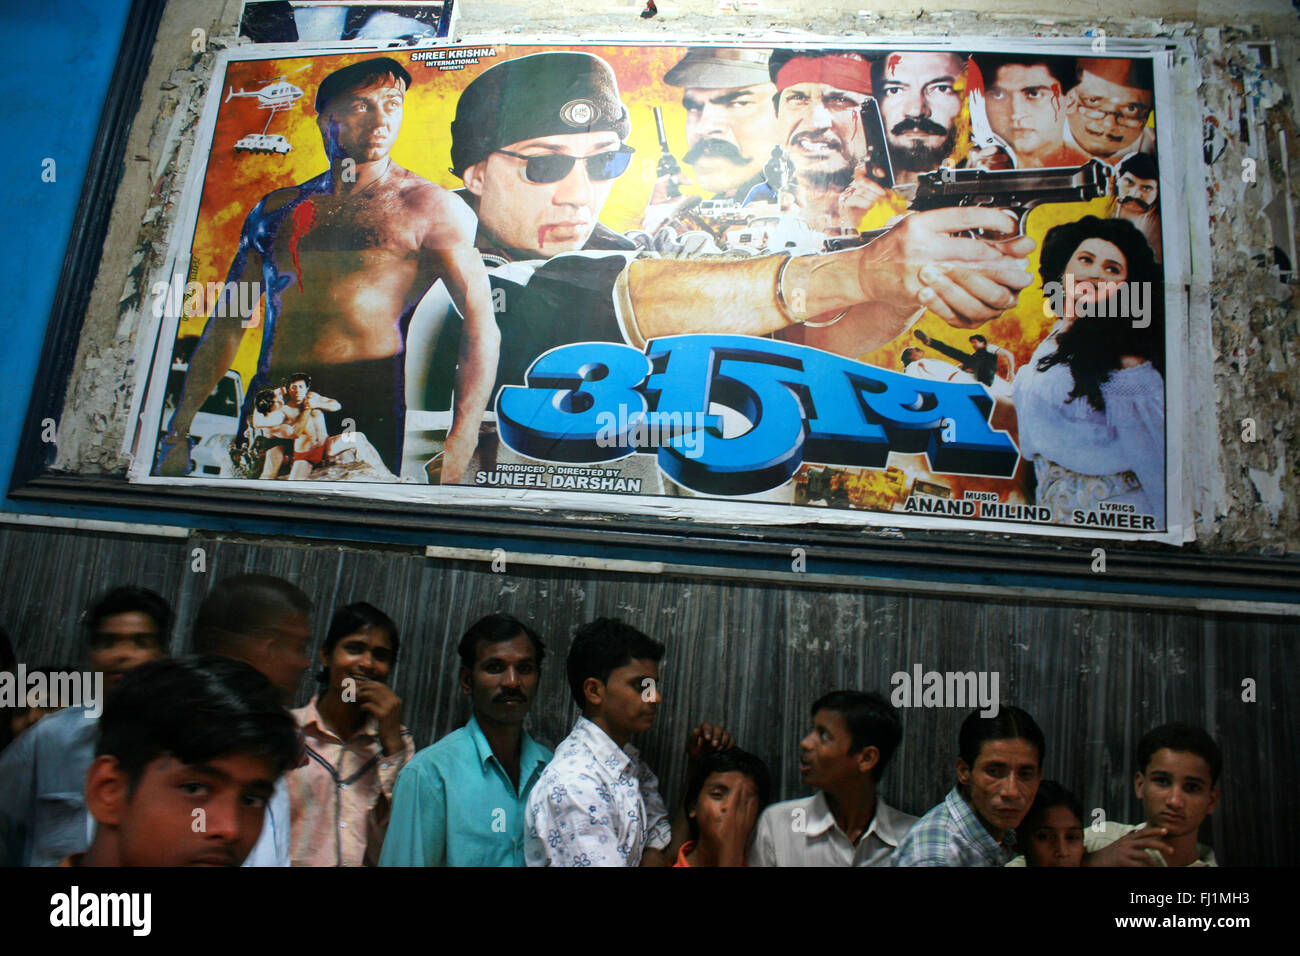 Indische Leute Queuing für Bollywood Film im Kino in Delhi, Indien, gespielt zu werden. Stockfoto